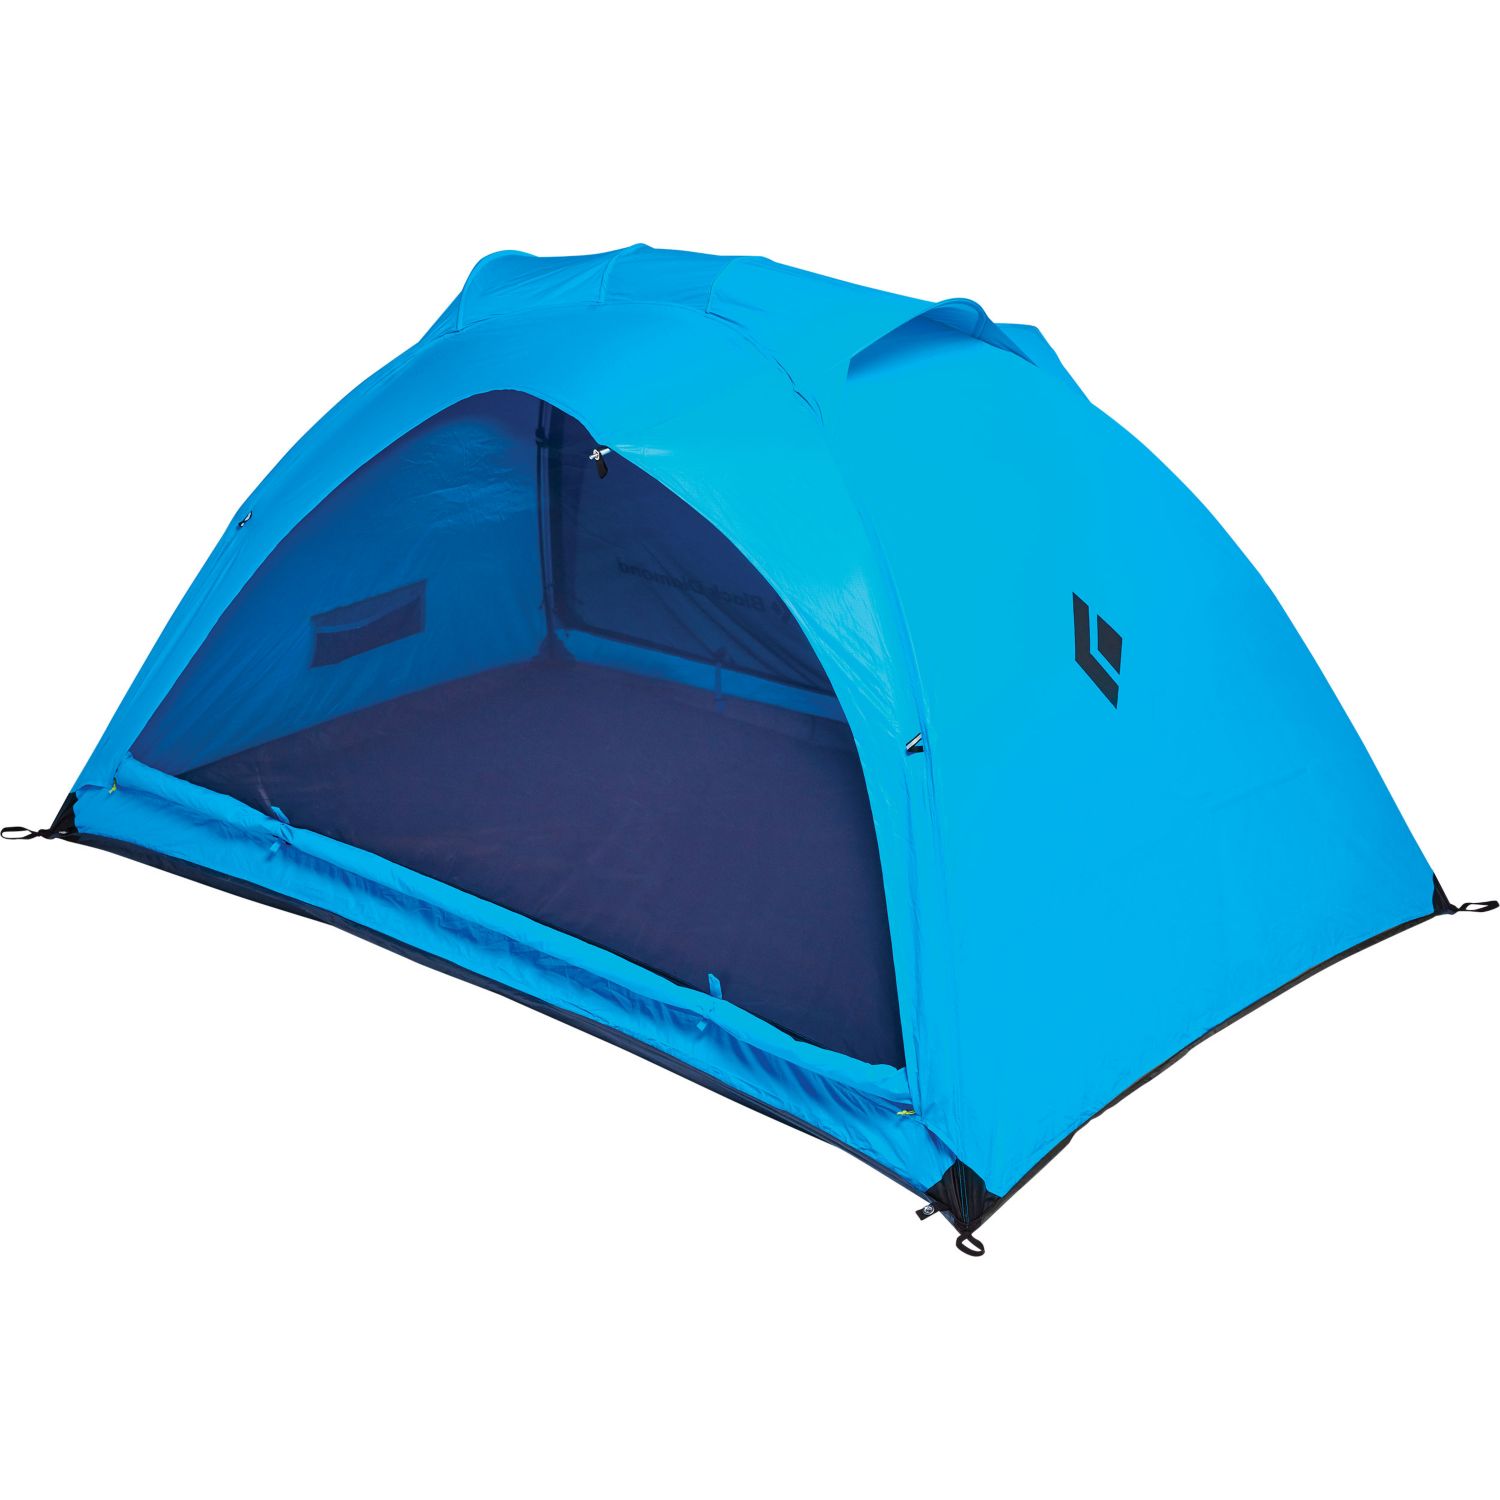 Hilight 3P Tent Distance Blue